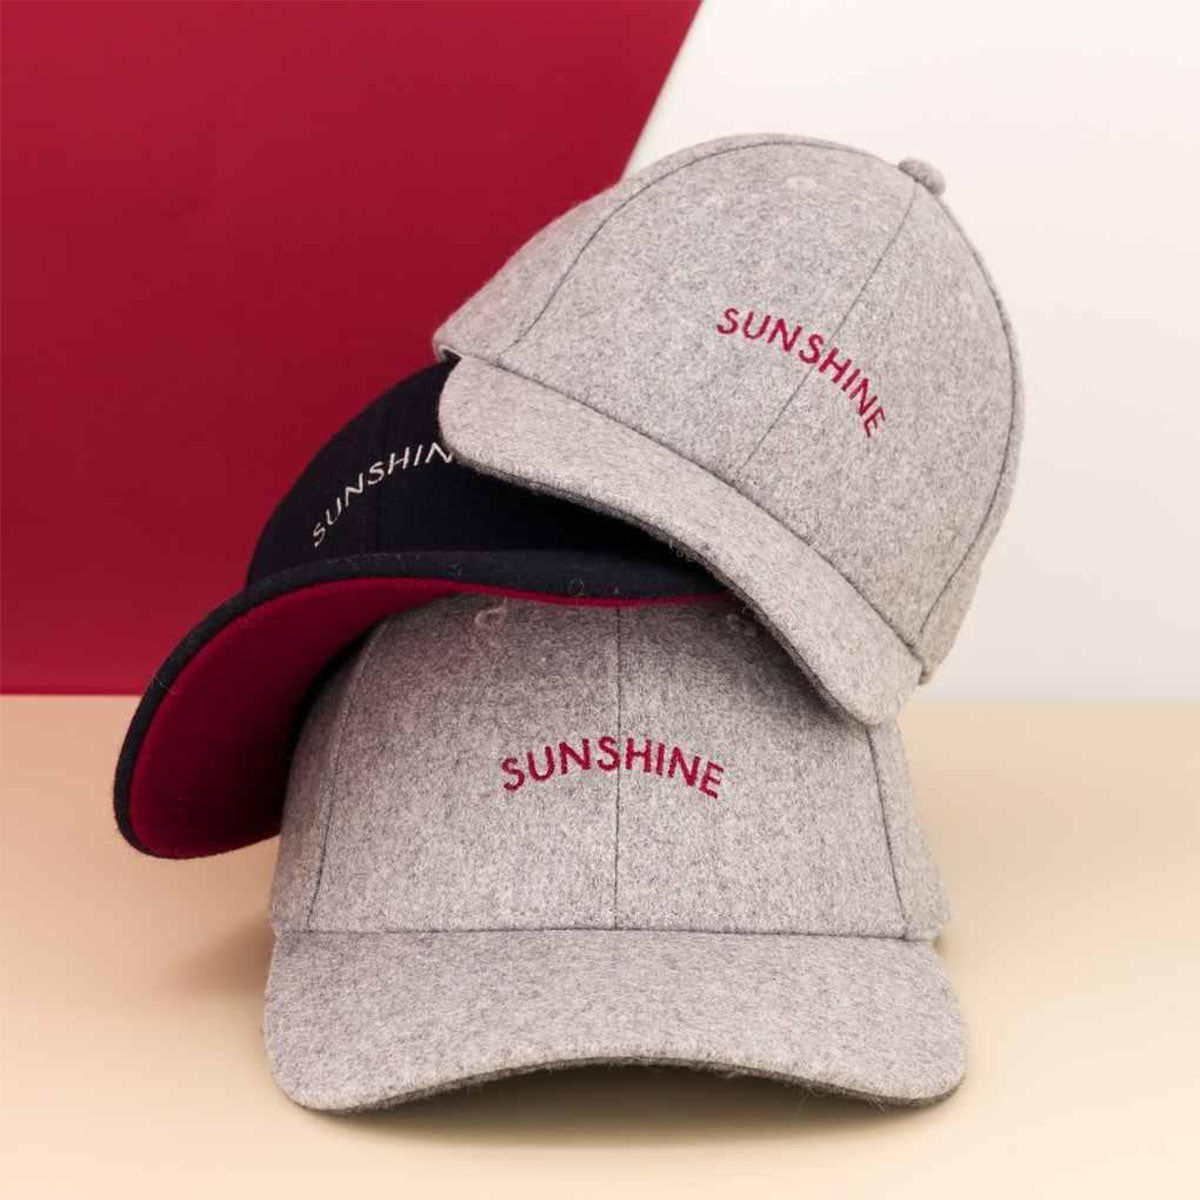 Deze toffe sunshine cap in het grijs van het Franse merk Chamaye maakt de look van je kleintje helemaal af! De pet is gemaakt van stevig materiaal en ziet er super stoer uit! VanZus